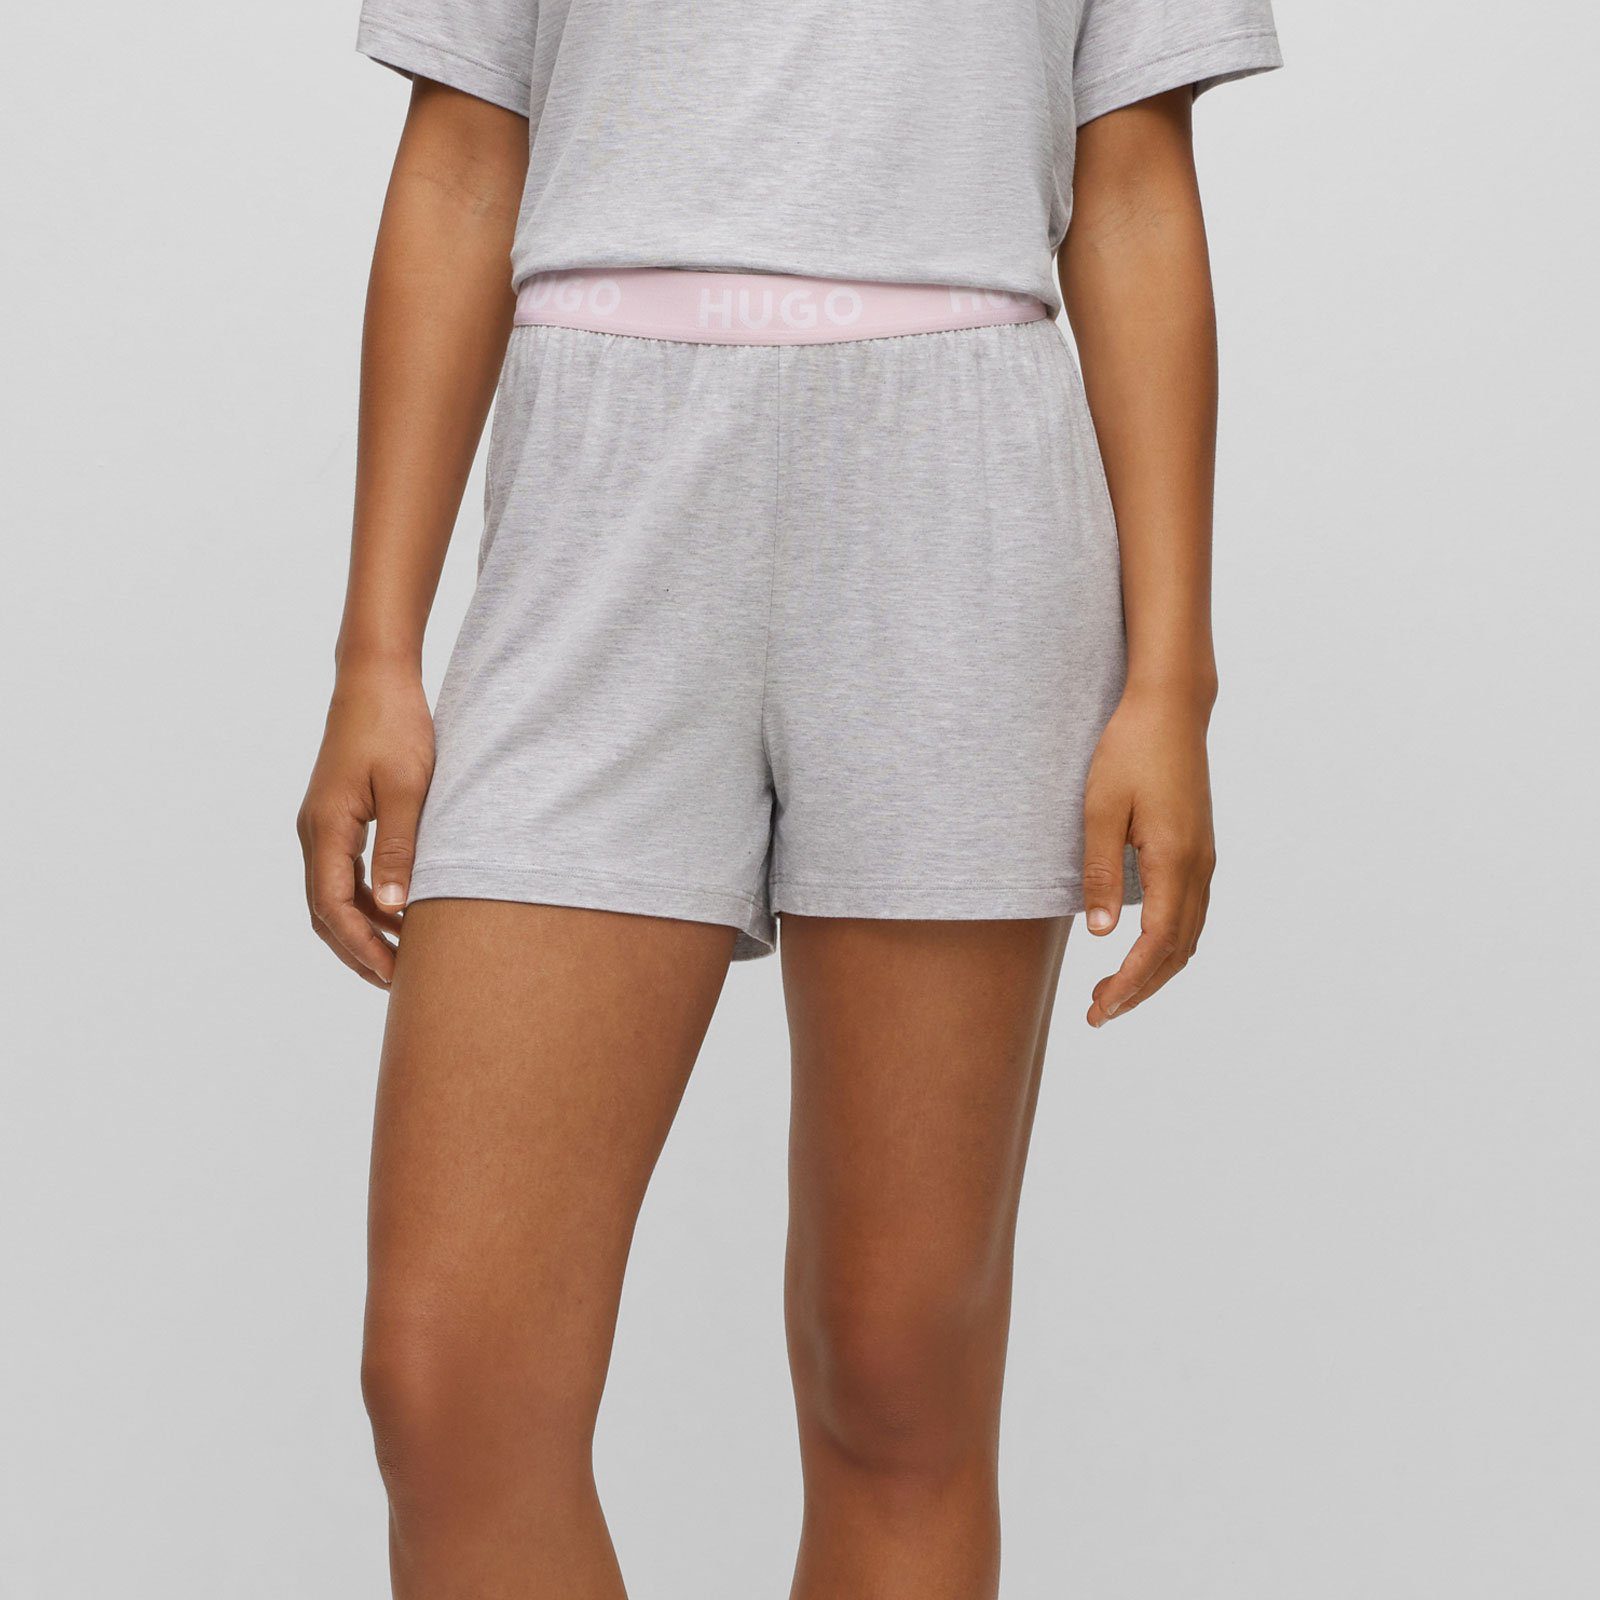 HUGO Unite mit mit sichtbarem Shorts Marken-Logos Pyjamashorts Bund